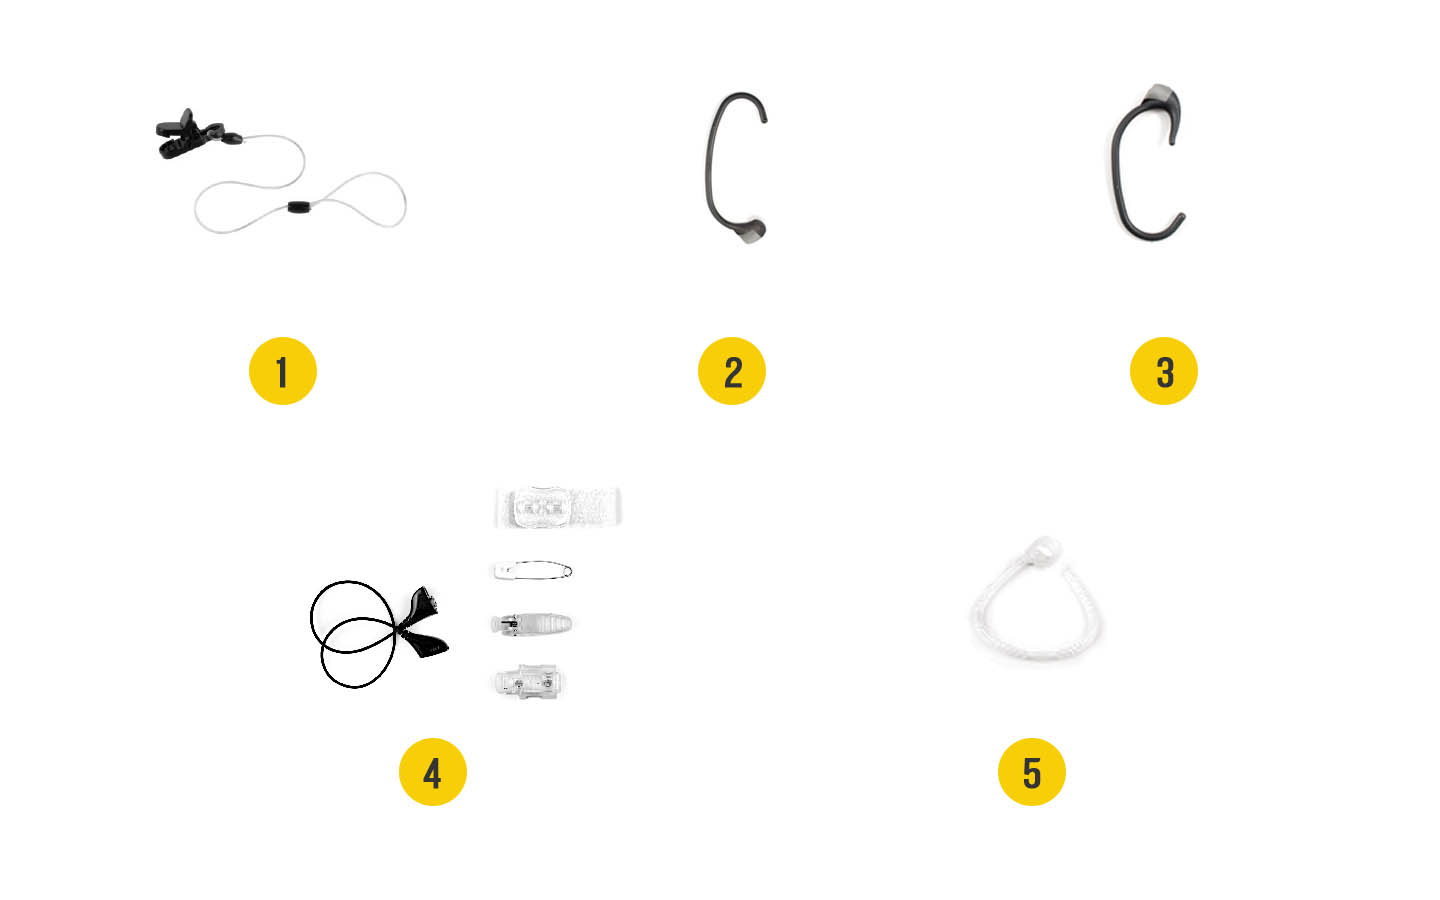 รูปภาพของอุปกรณ์เสริมสำหรับเครื่องแปลงสัญญาณเสียง Baha: 1. ตัวหนีบพร้อมสายนิรภัยแบบยาว 2. ที่เกี่ยวหู+, 3 Snugfit (ขาเกี่ยว), 4 Litewear, 5 Mic Lock (ตัวล็อกไมค์)